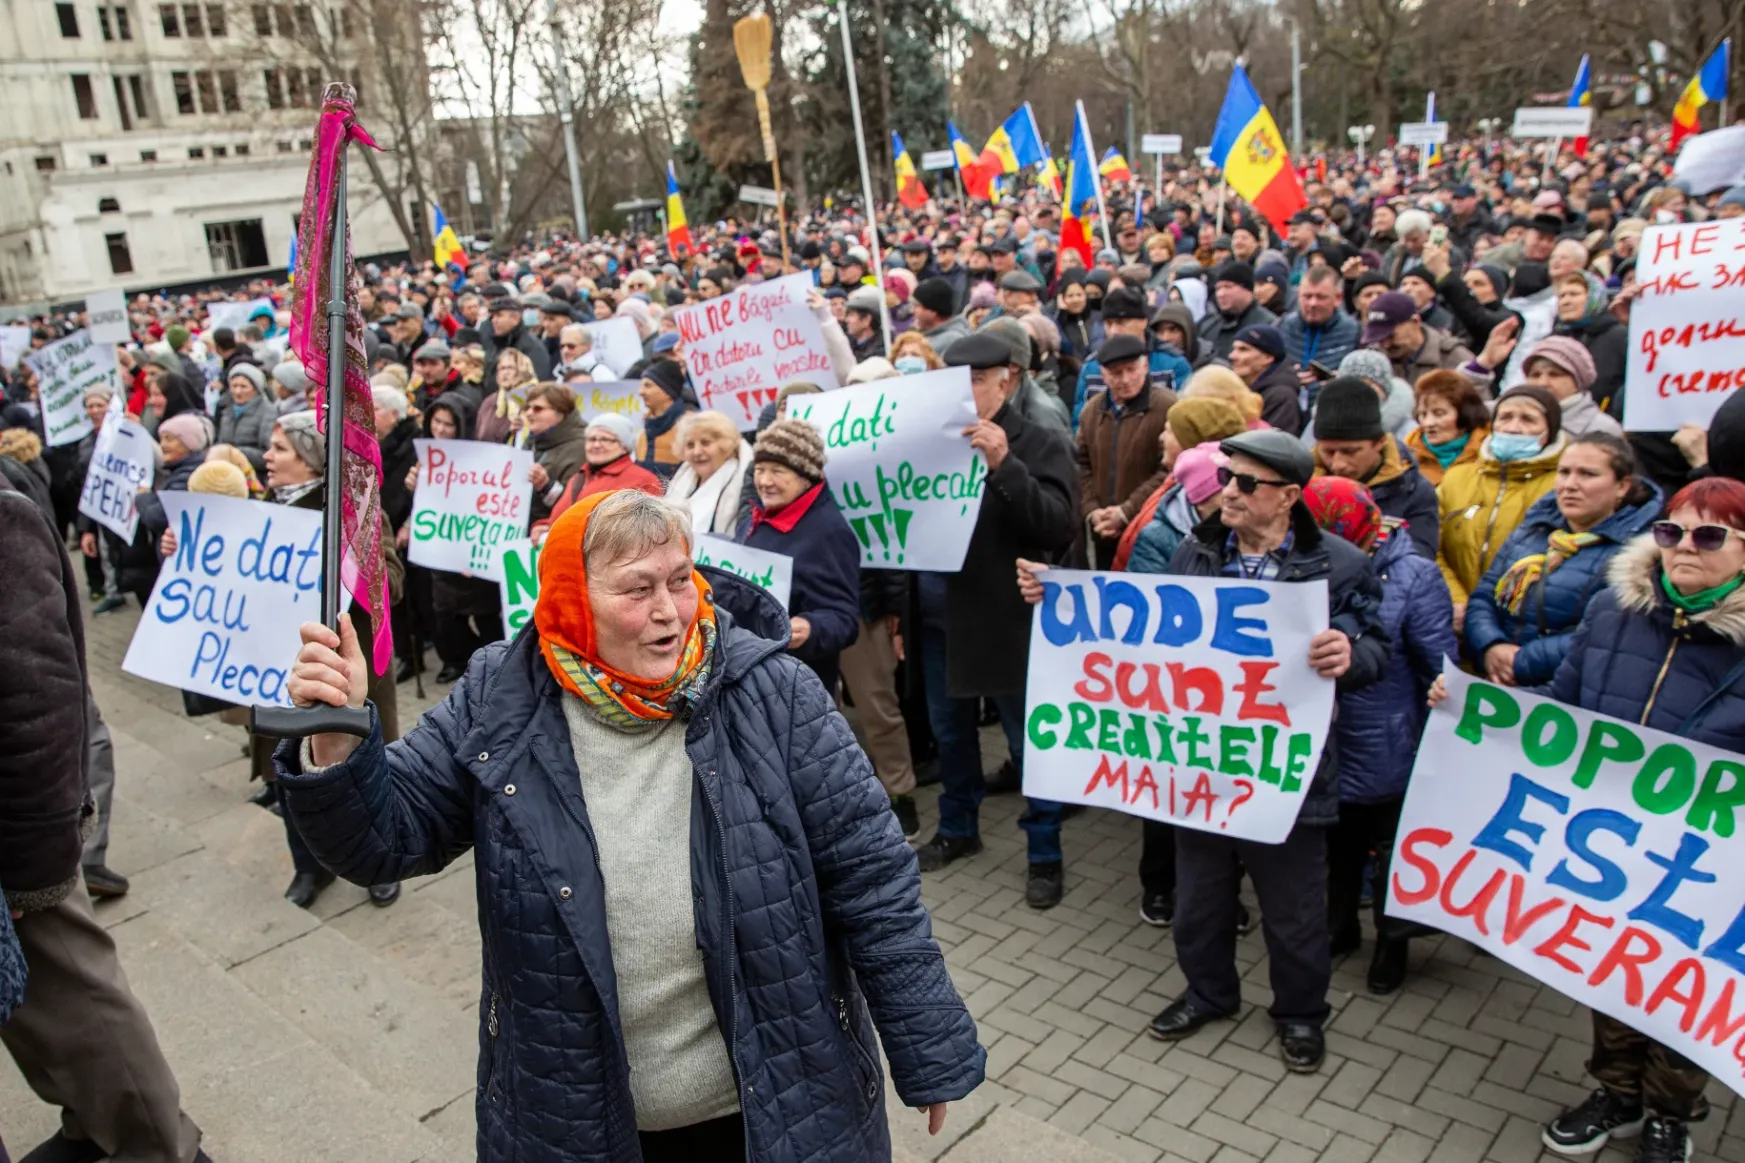 Puccskísérlettől tartva lett egyre feszültebb a helyzet Moldovában